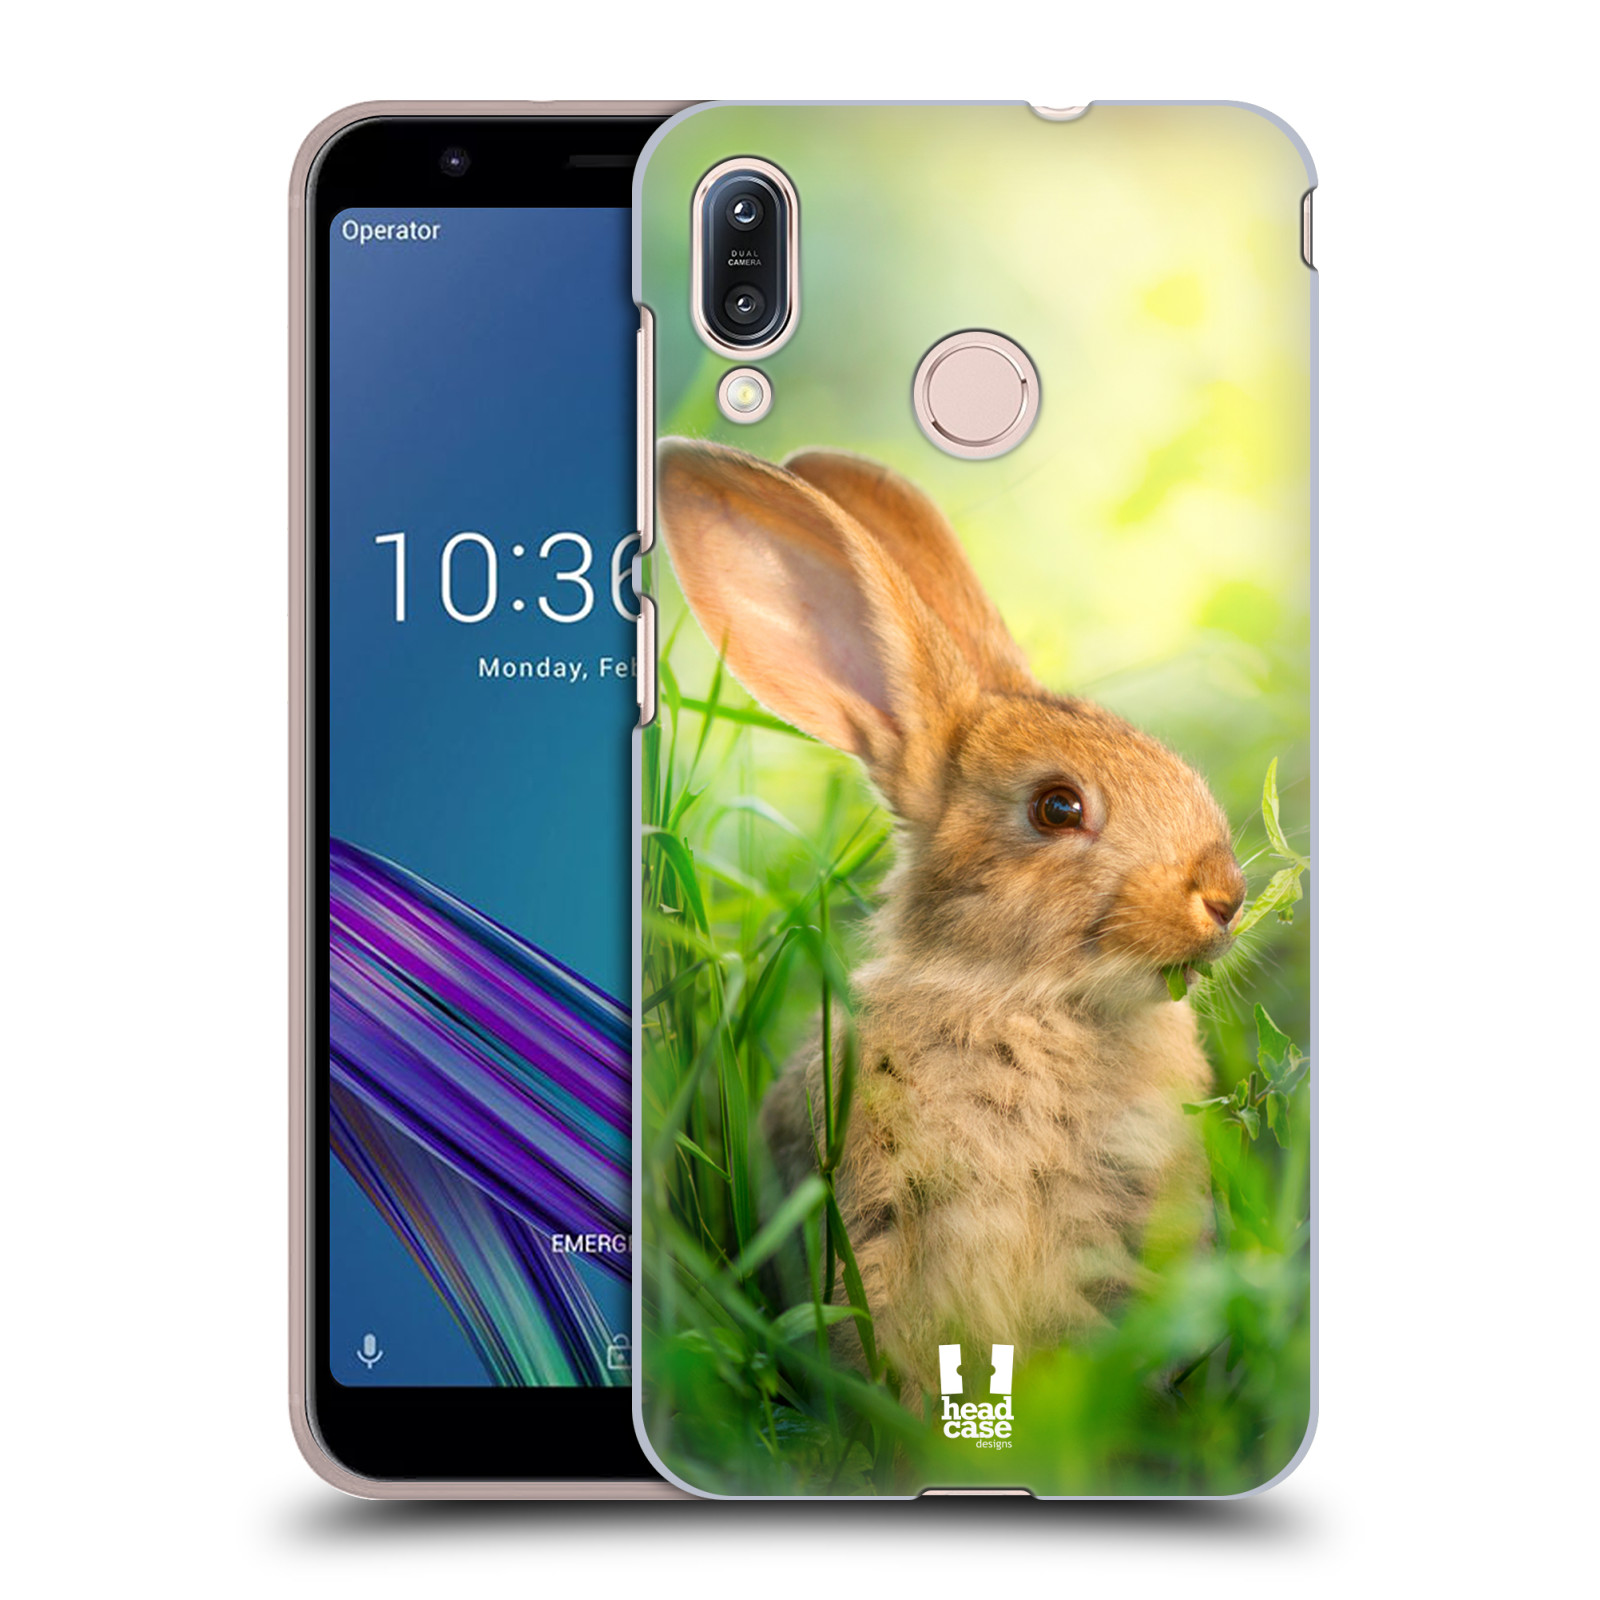 Pouzdro na mobil Asus Zenfone Max M1 (ZB555KL) - HEAD CASE - vzor Divočina, Divoký život a zvířata foto ZAJÍČEK V TRÁVĚ ZELENÁ